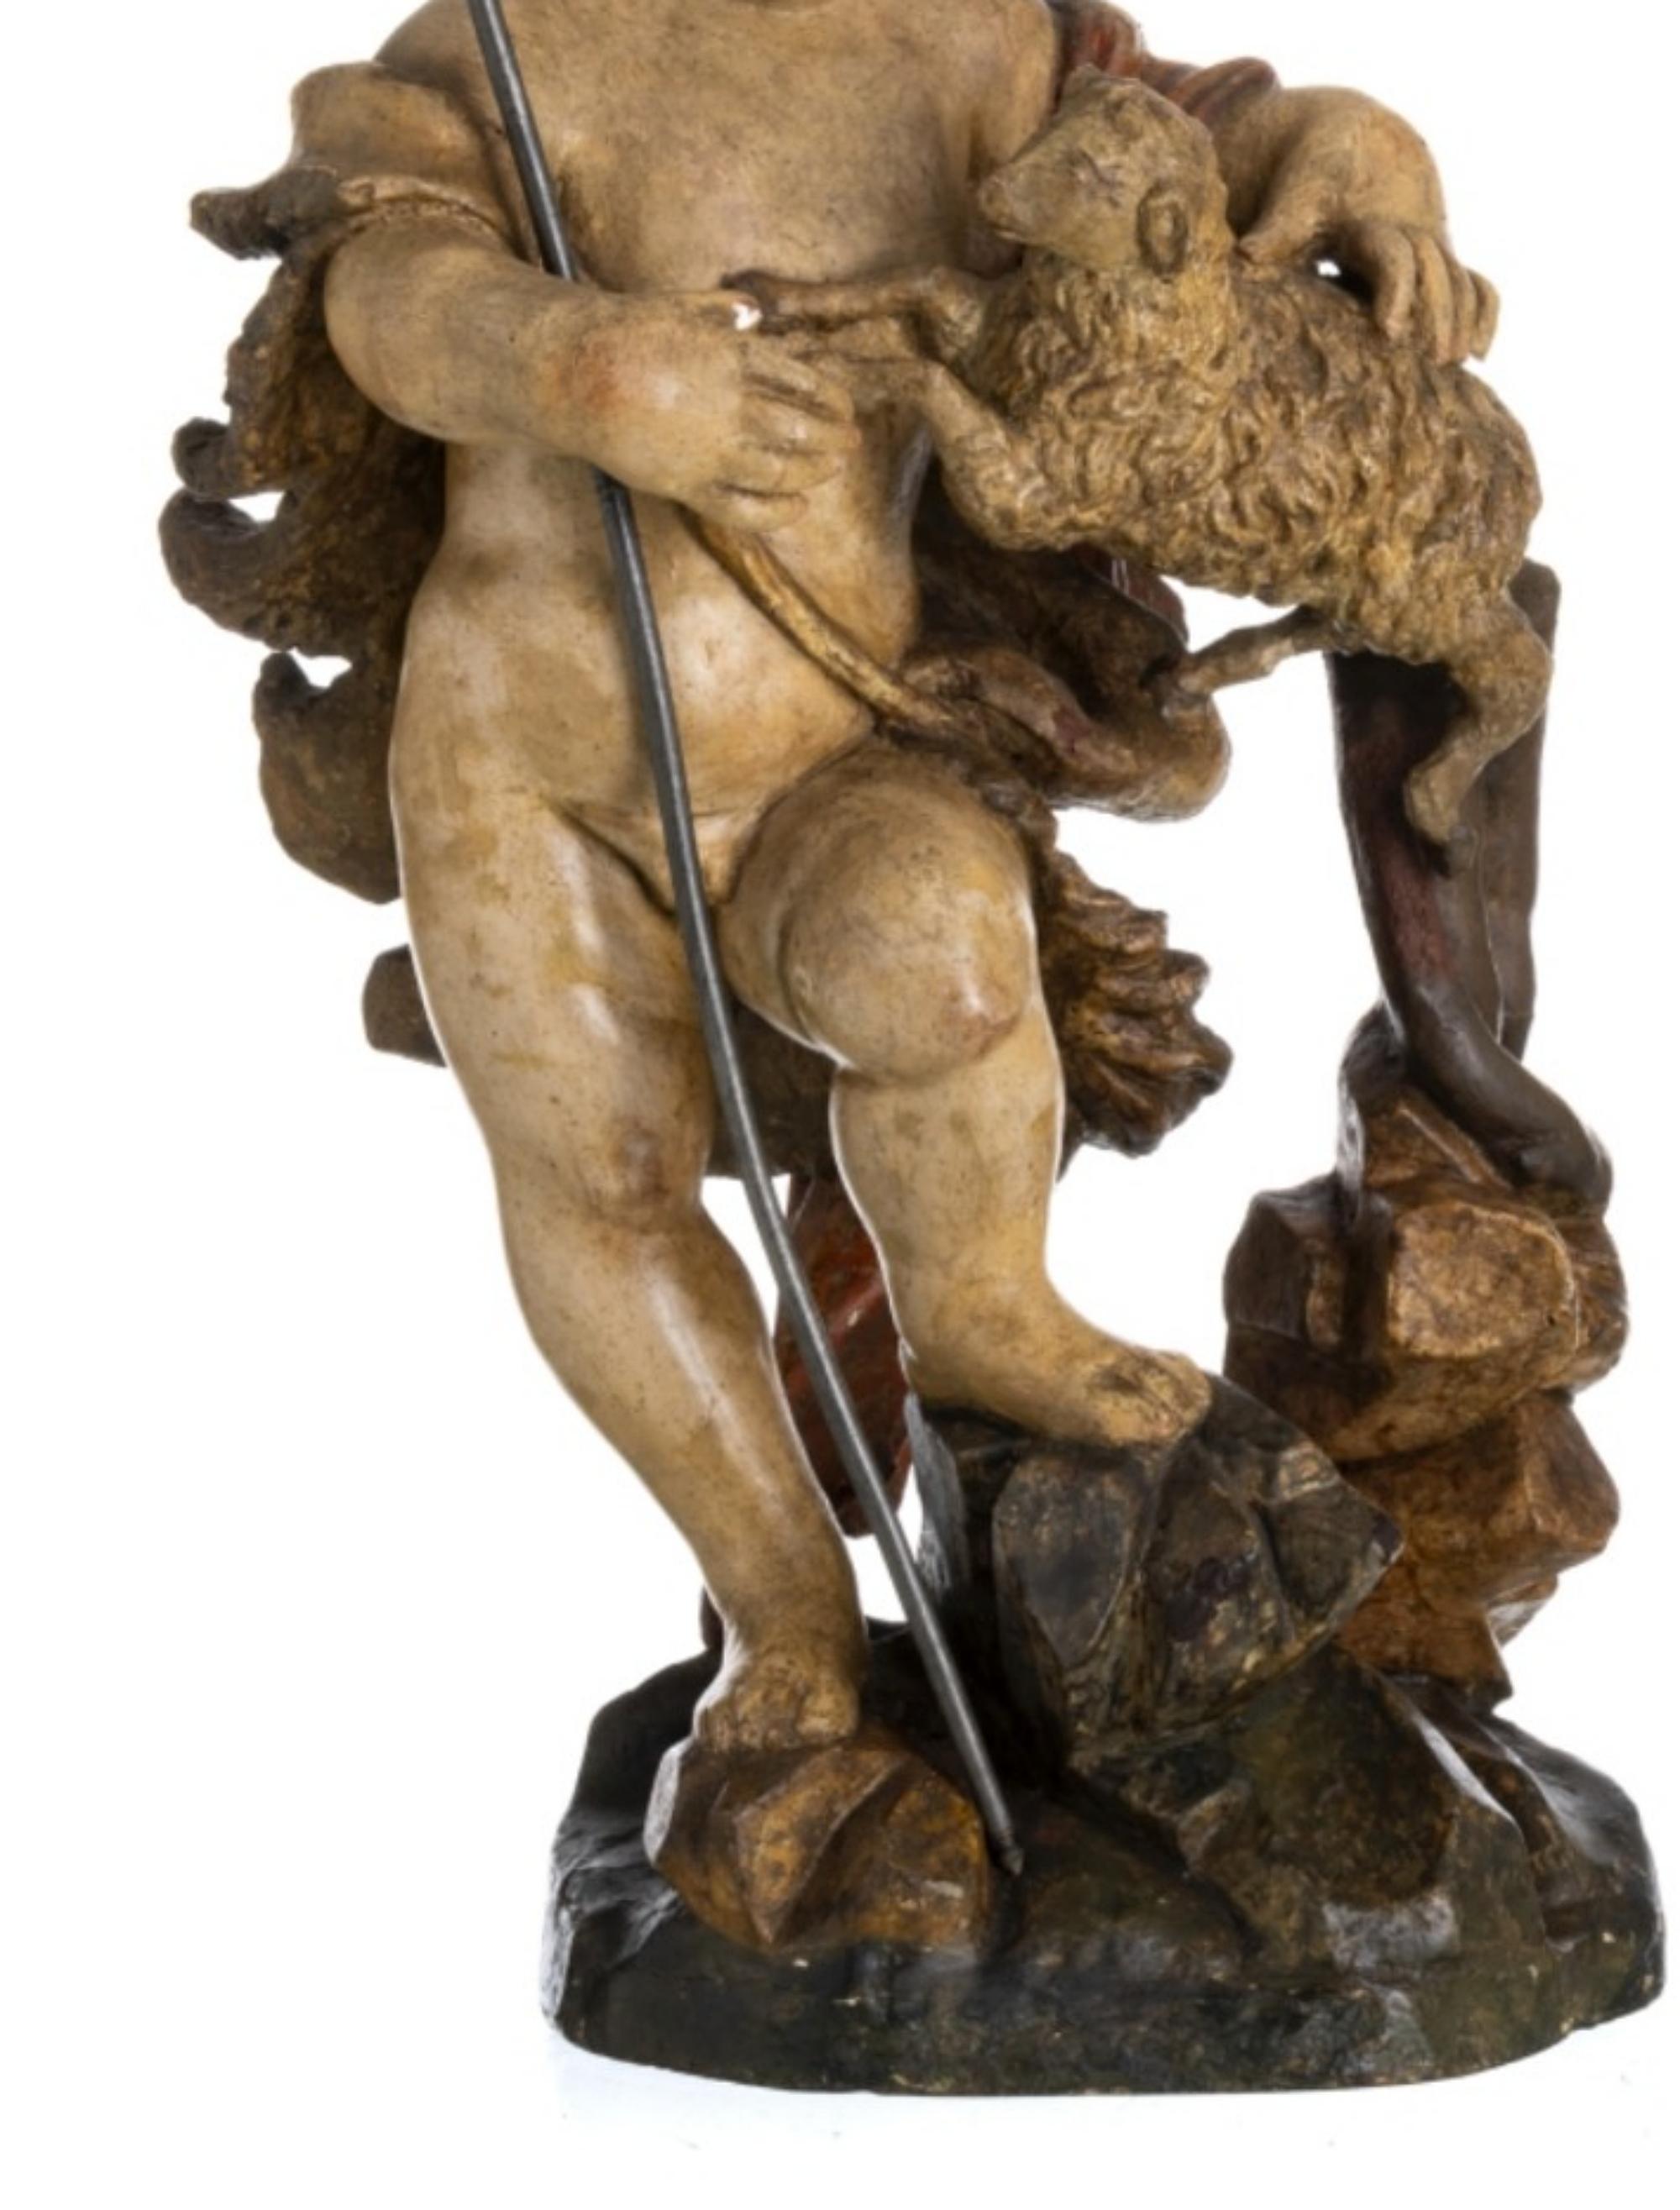 SAINT JOHN THE BAPTIST 18. Jahrhundert

Portugiesische Skulptur aus dem 18. Jahrhundert. 
aus polychromem Holz. 
Die Figur ist stehend mit dem Lamm dargestellt. 
Kleine Schwächen.
Höhe: 58 cm
guter Zustand